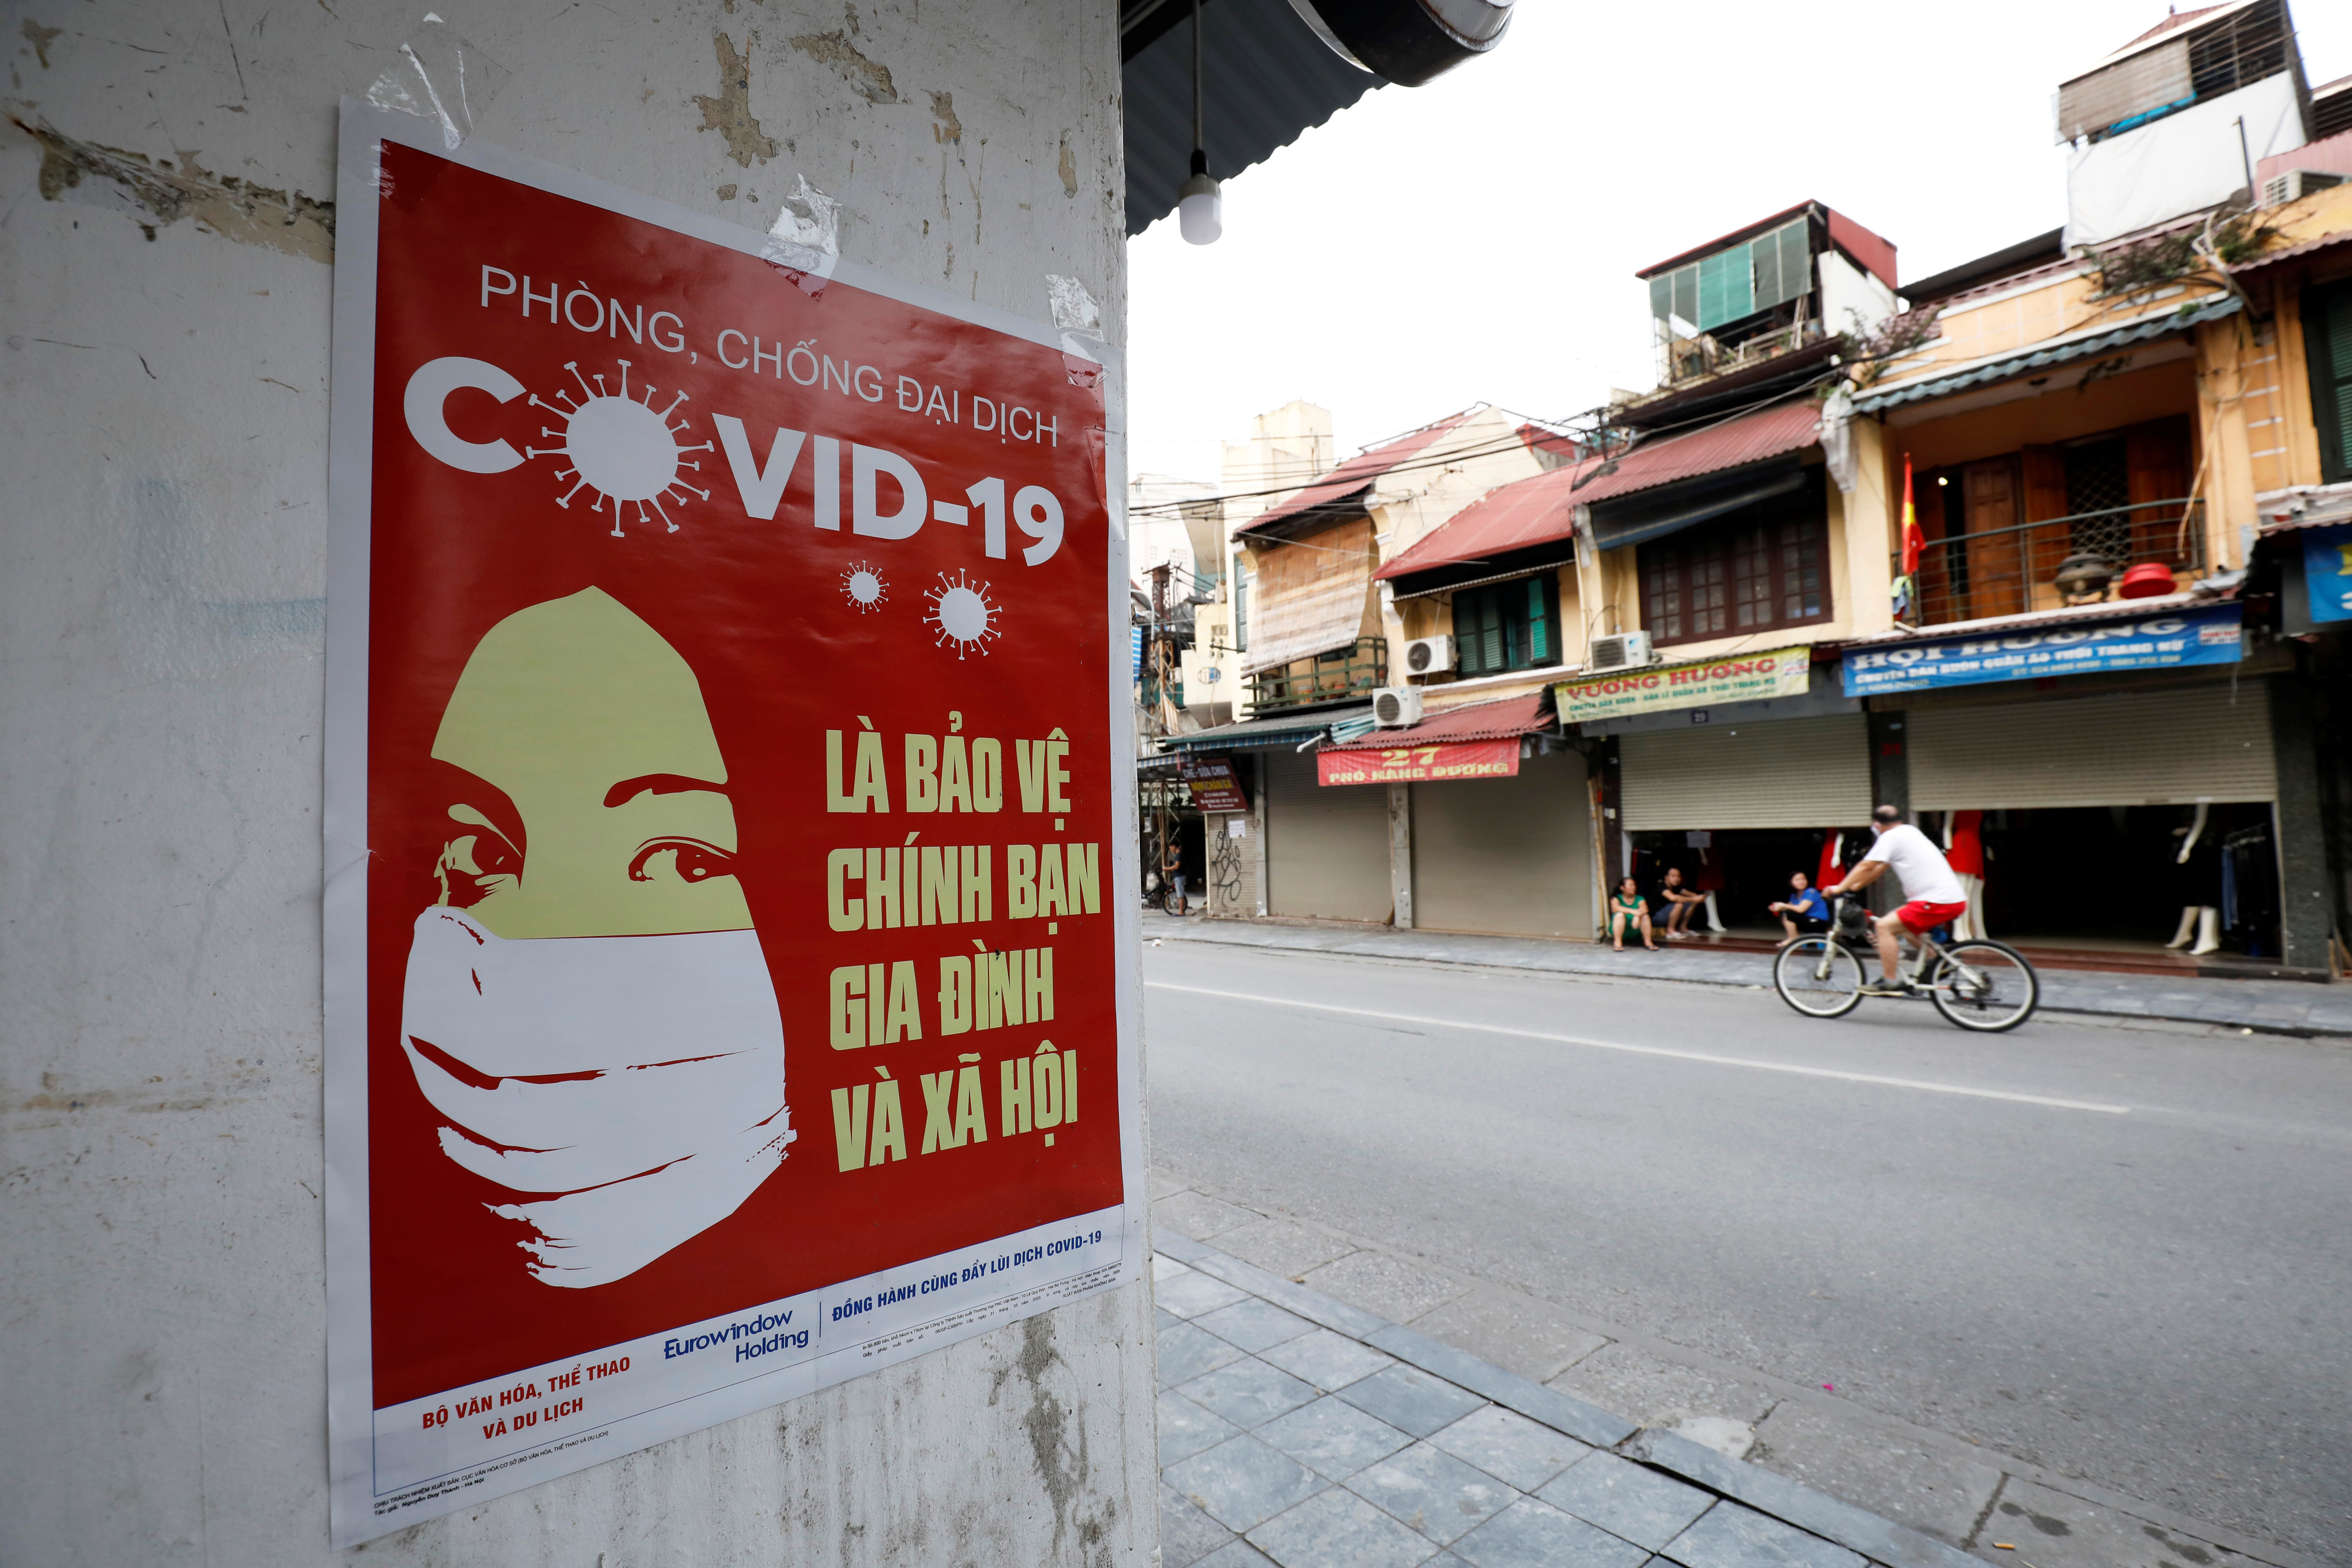 Un póster advierte sobre el COVID-19 en una calle de Hanoi